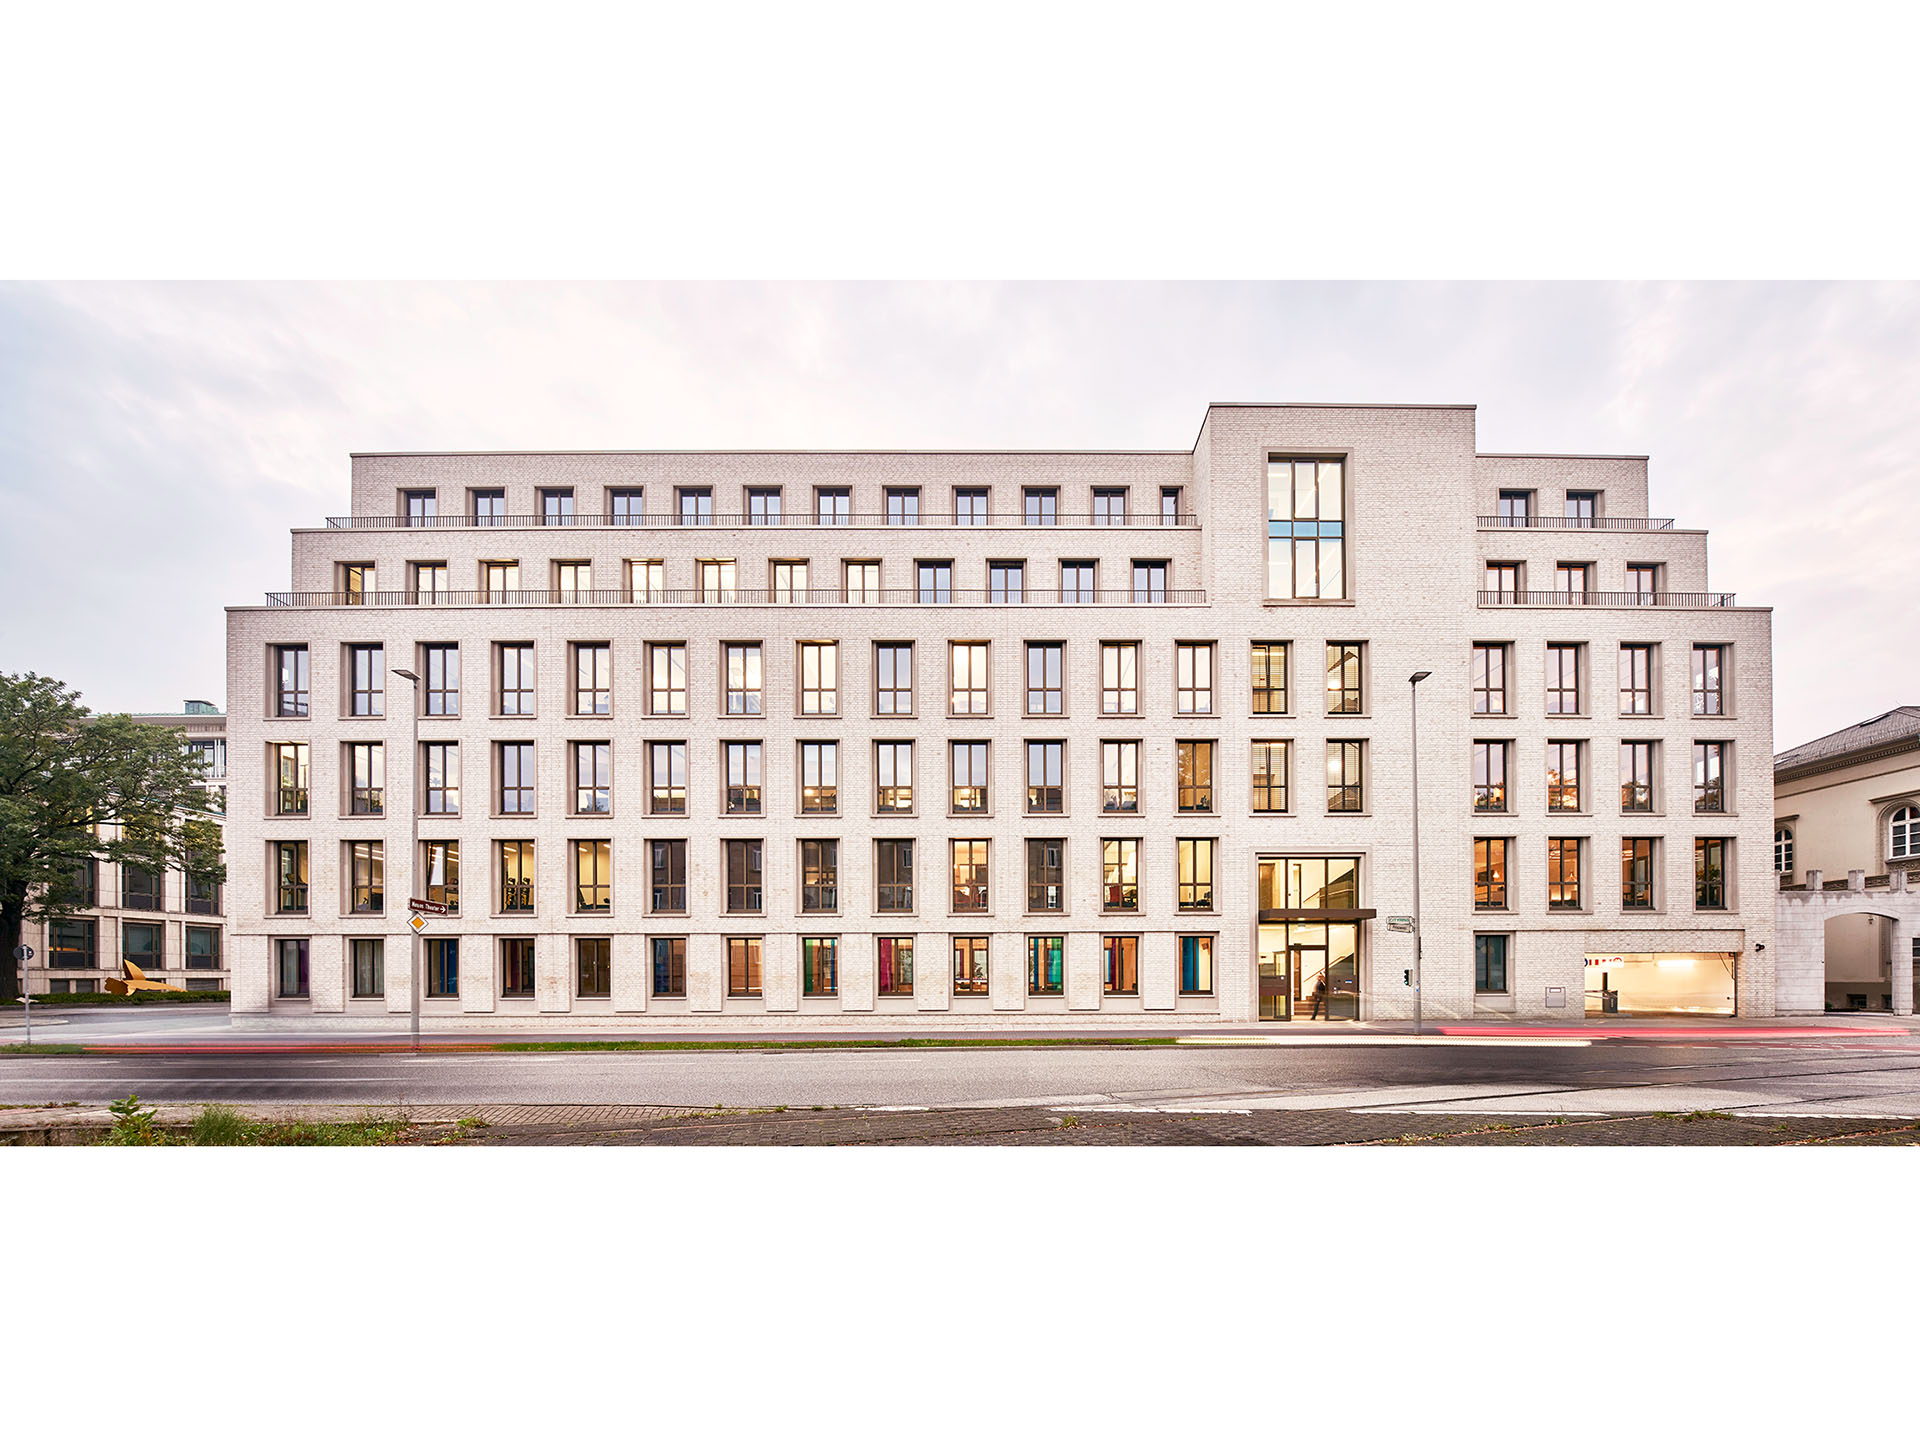  Architekturfoto: Fassadengestaltung Prinzenstraße Hannover, gruppeomp architekten 